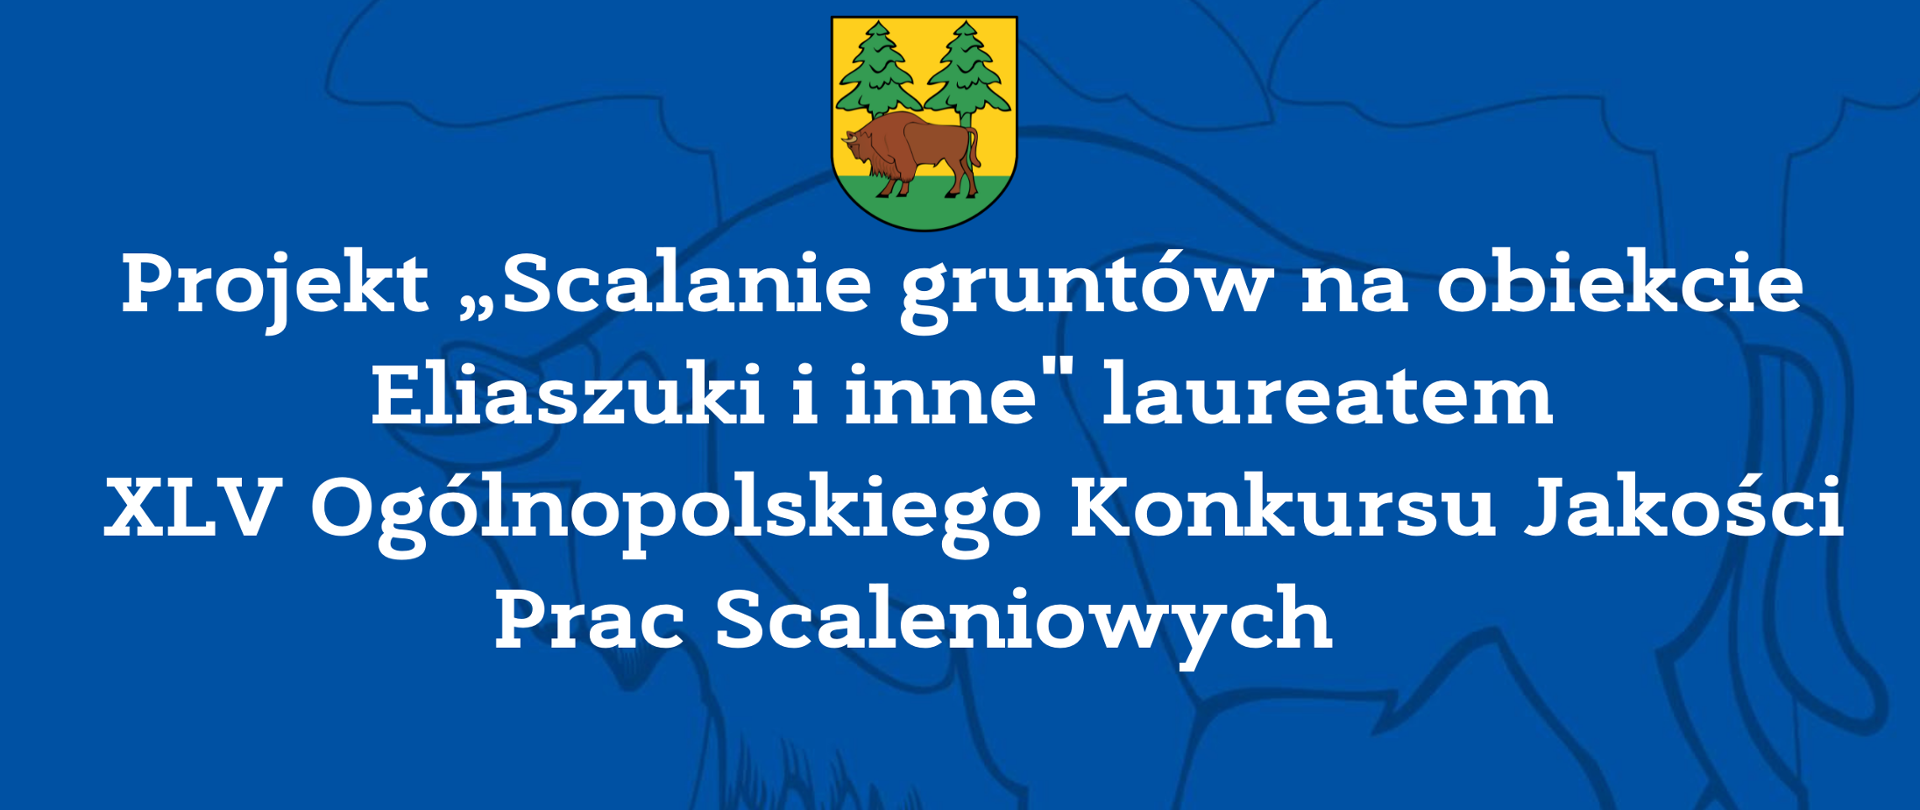 Projekt „Scalanie gruntów na obiekcie Eliaszuki i inne" laureatem XLV Ogólnopolskiego Konkursu Jakości Prac Scaleniowych 